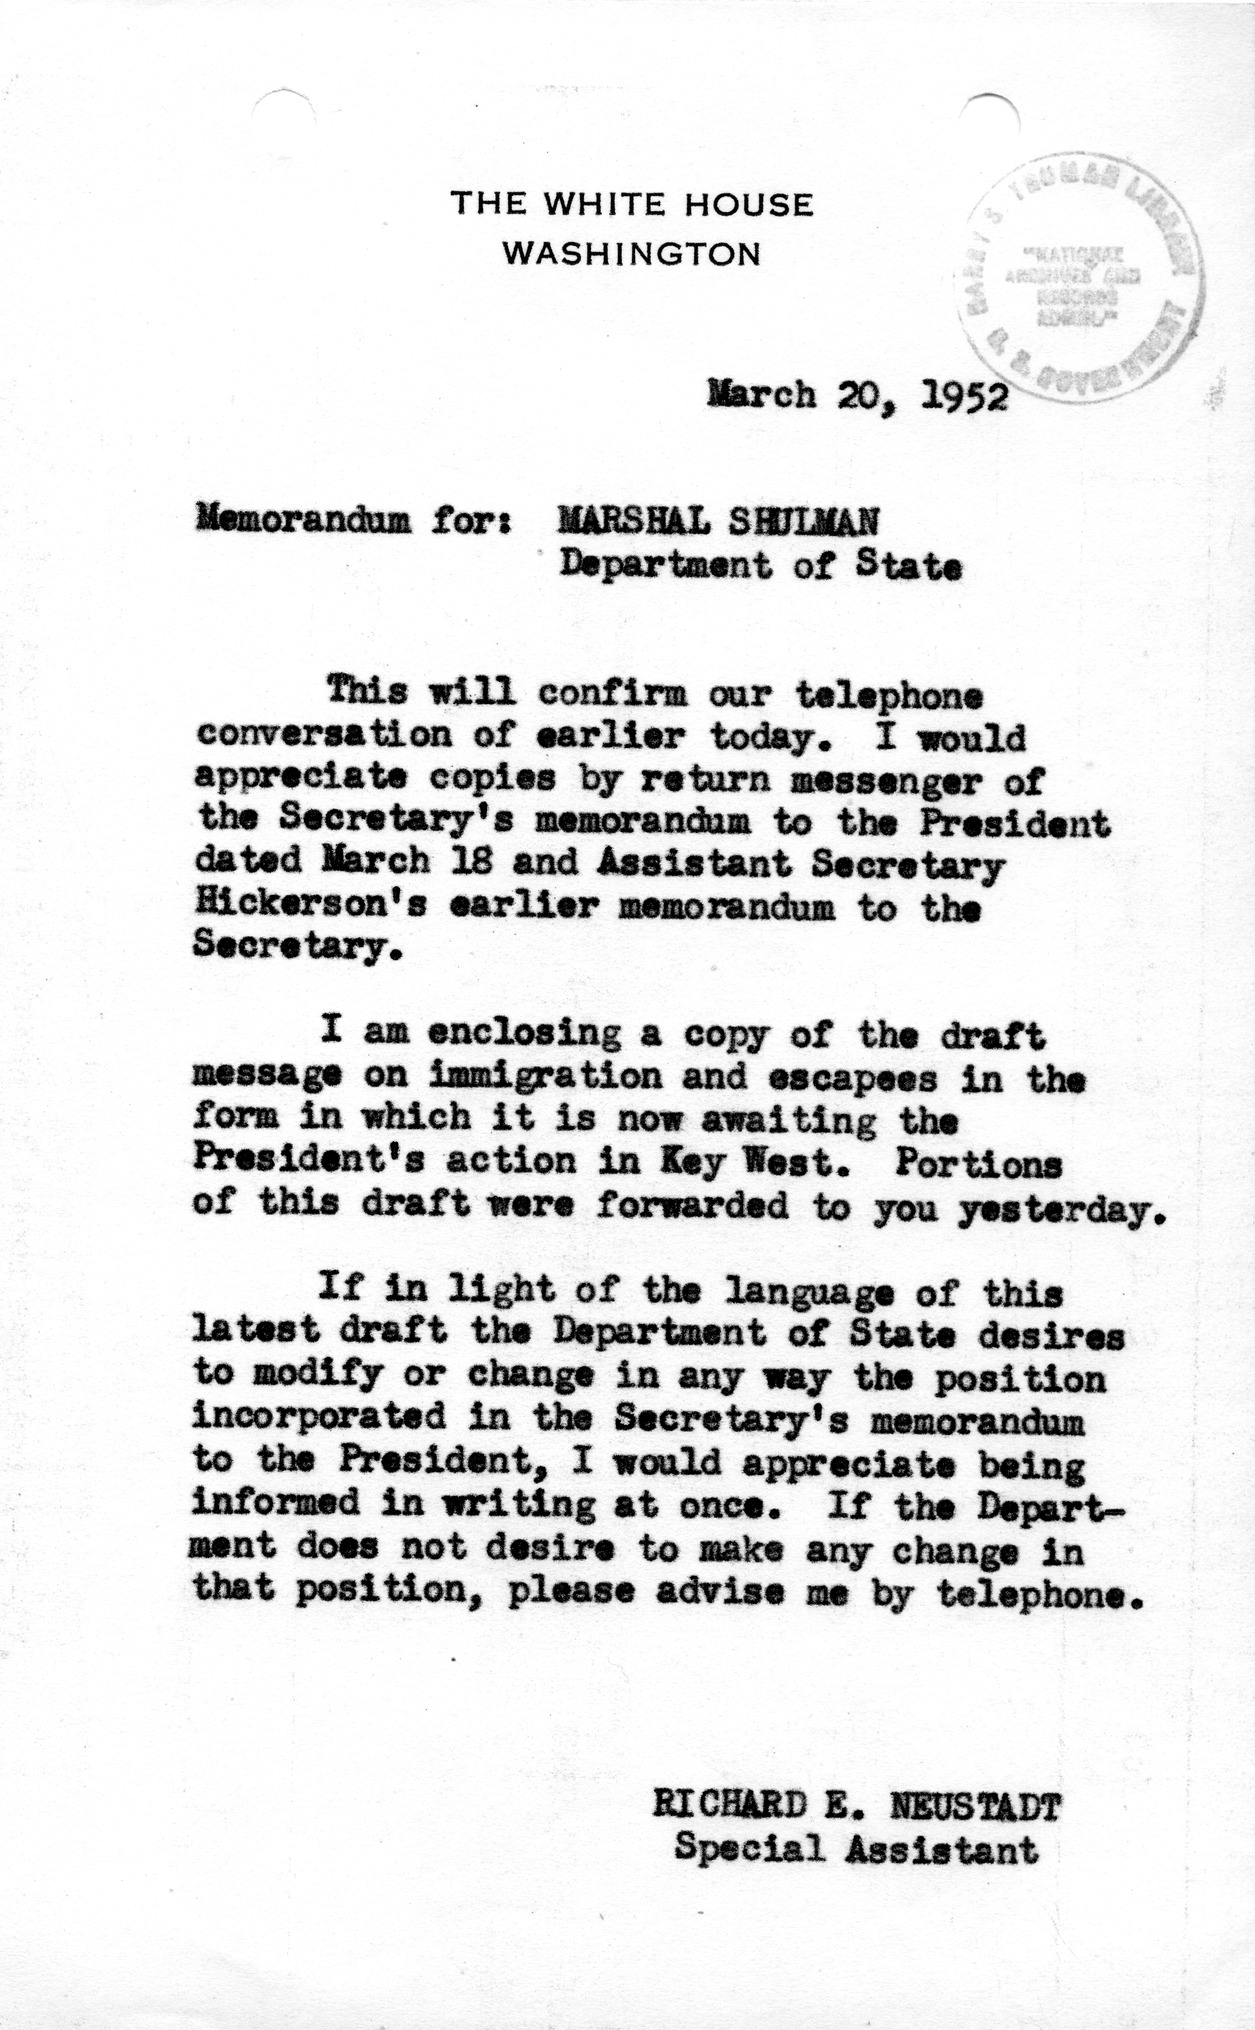 Memorandum from Richard Neustadt to Marshal Shulman